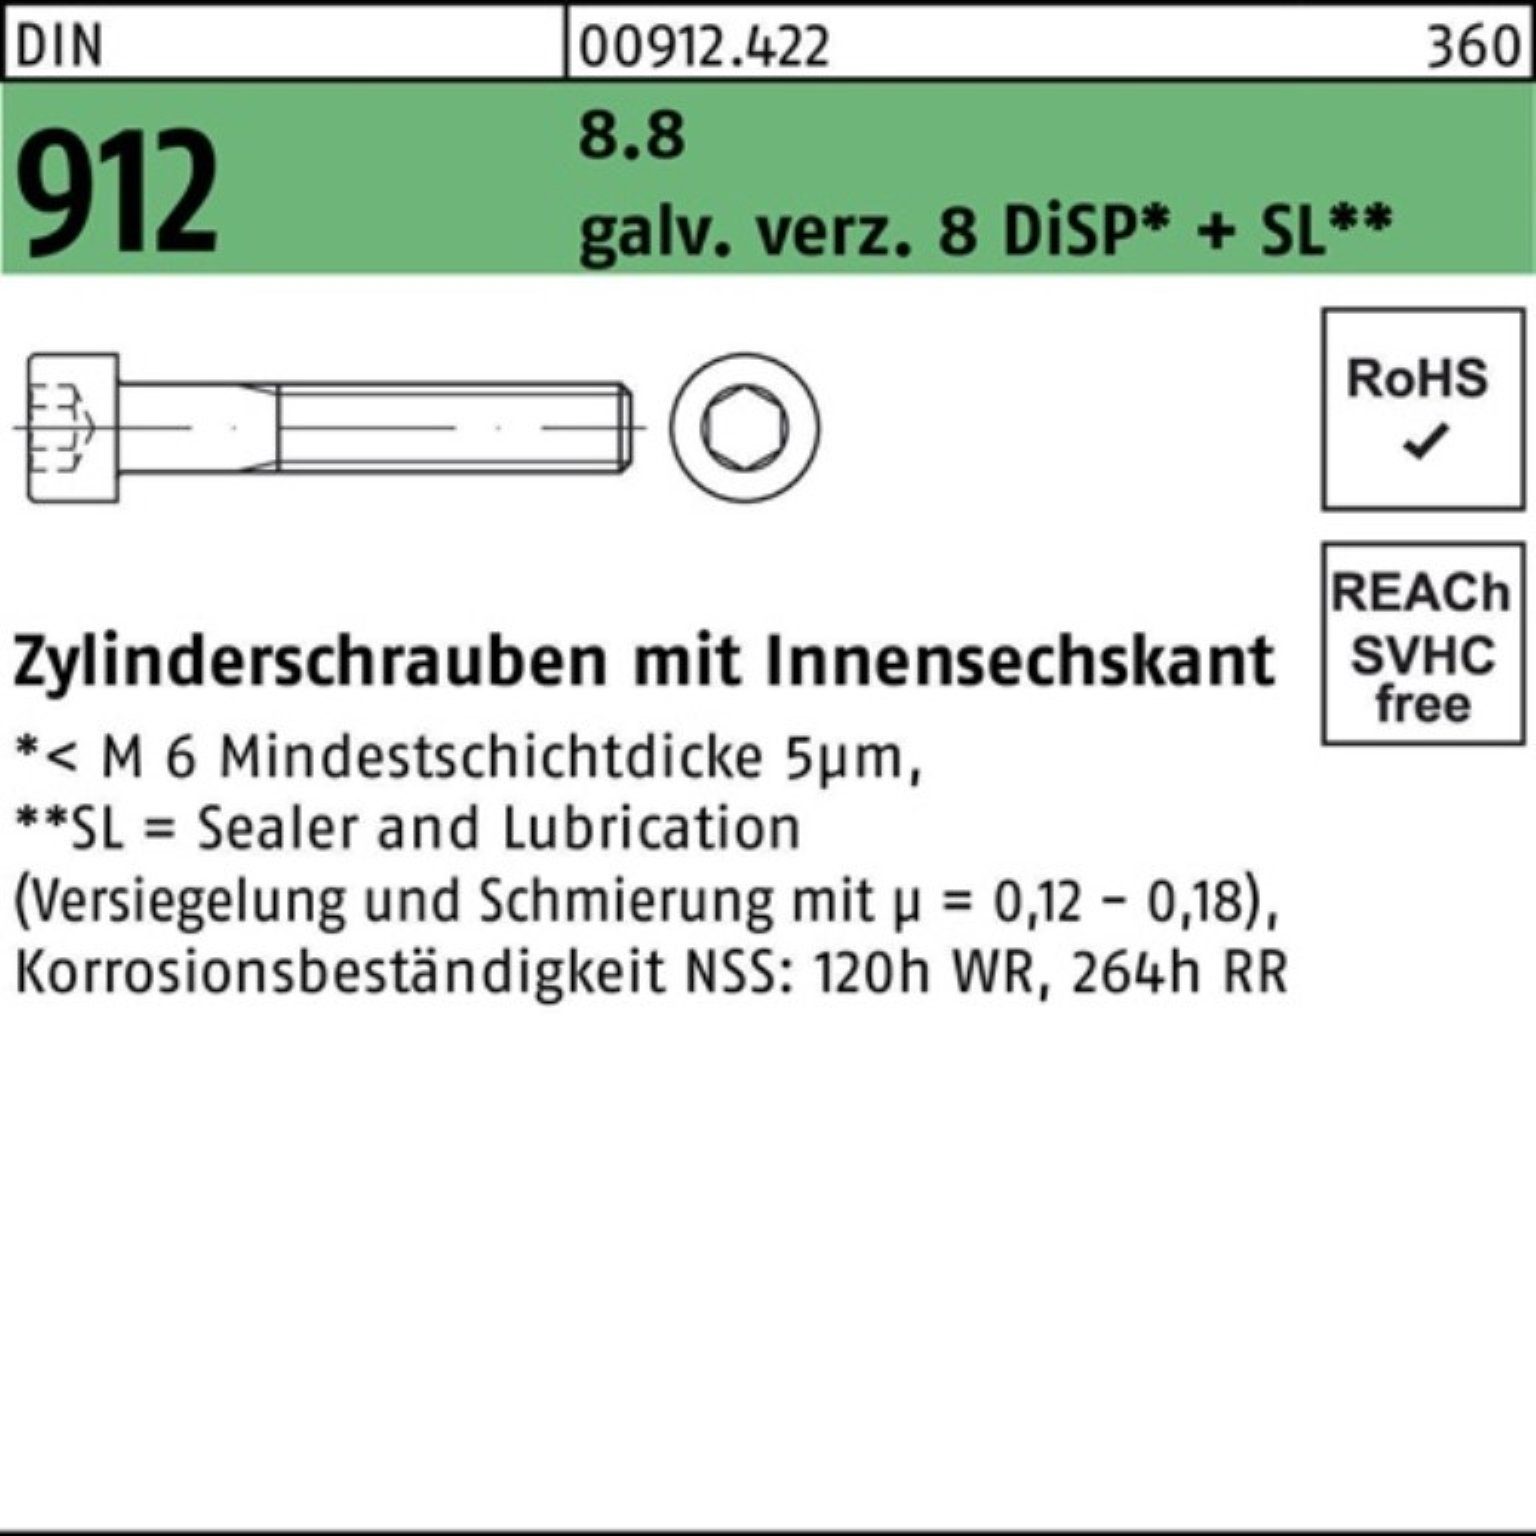 richtiger Preis Reyher Zylinderschraube 100er Pack Zylinderschraube M20x DiS 55 8 8.8 DIN gal Zn Innen-6kt 912